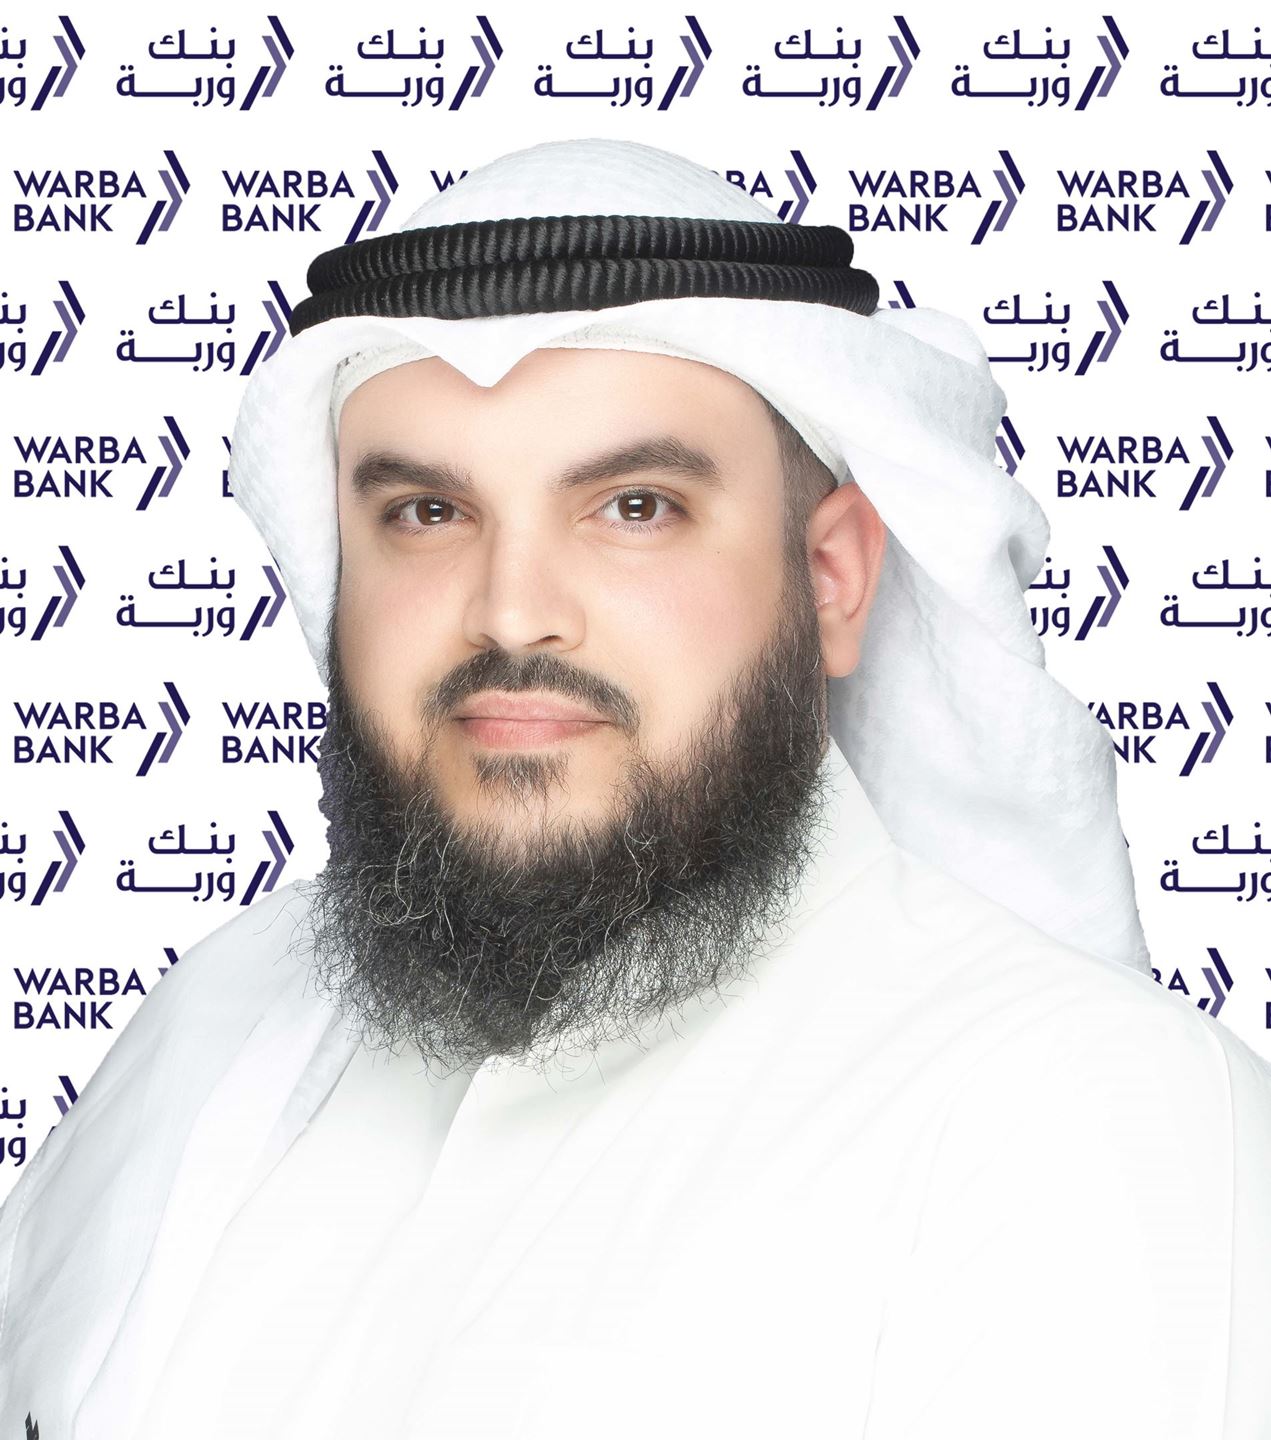 السيد ثويني خالد الثويني - رئيس المجموعة المصرفية للاستثمار في البنك